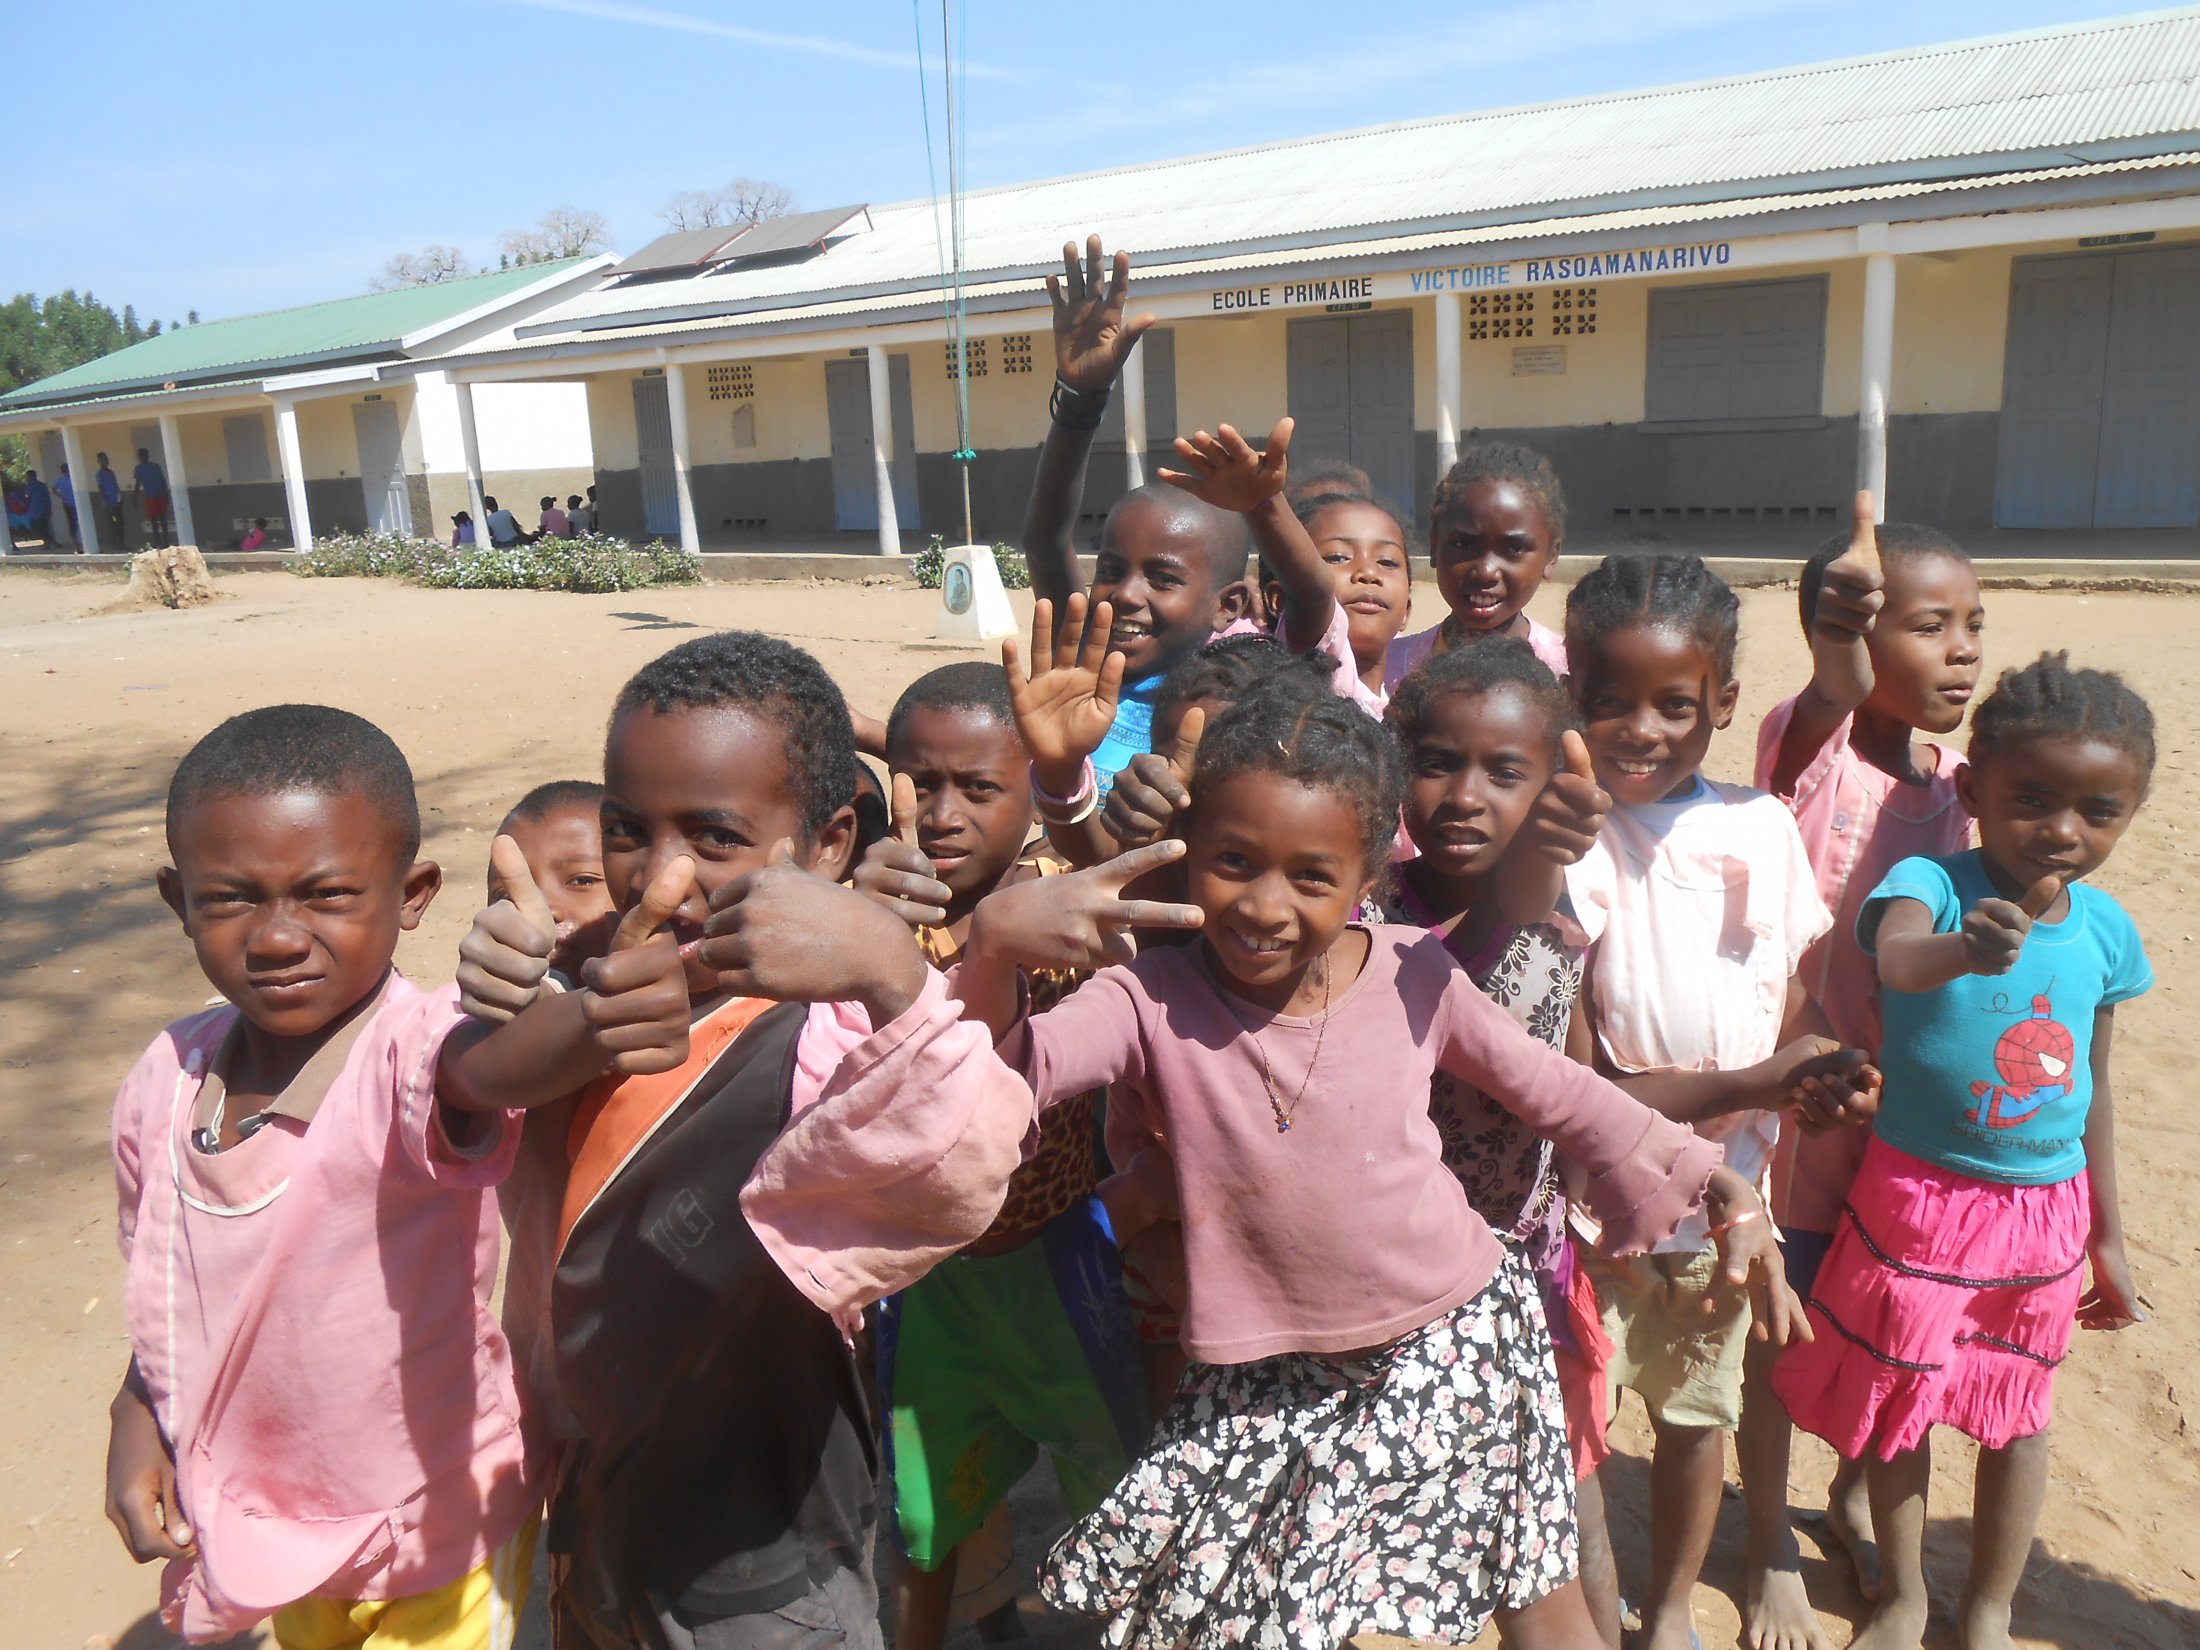 Madaquatre werft fondsen voor de bouw van “bush” scholen in de Morondava regio van Madagaskar. De BESIX Foundation financierde de bouw van nieuwe klaslokalen.